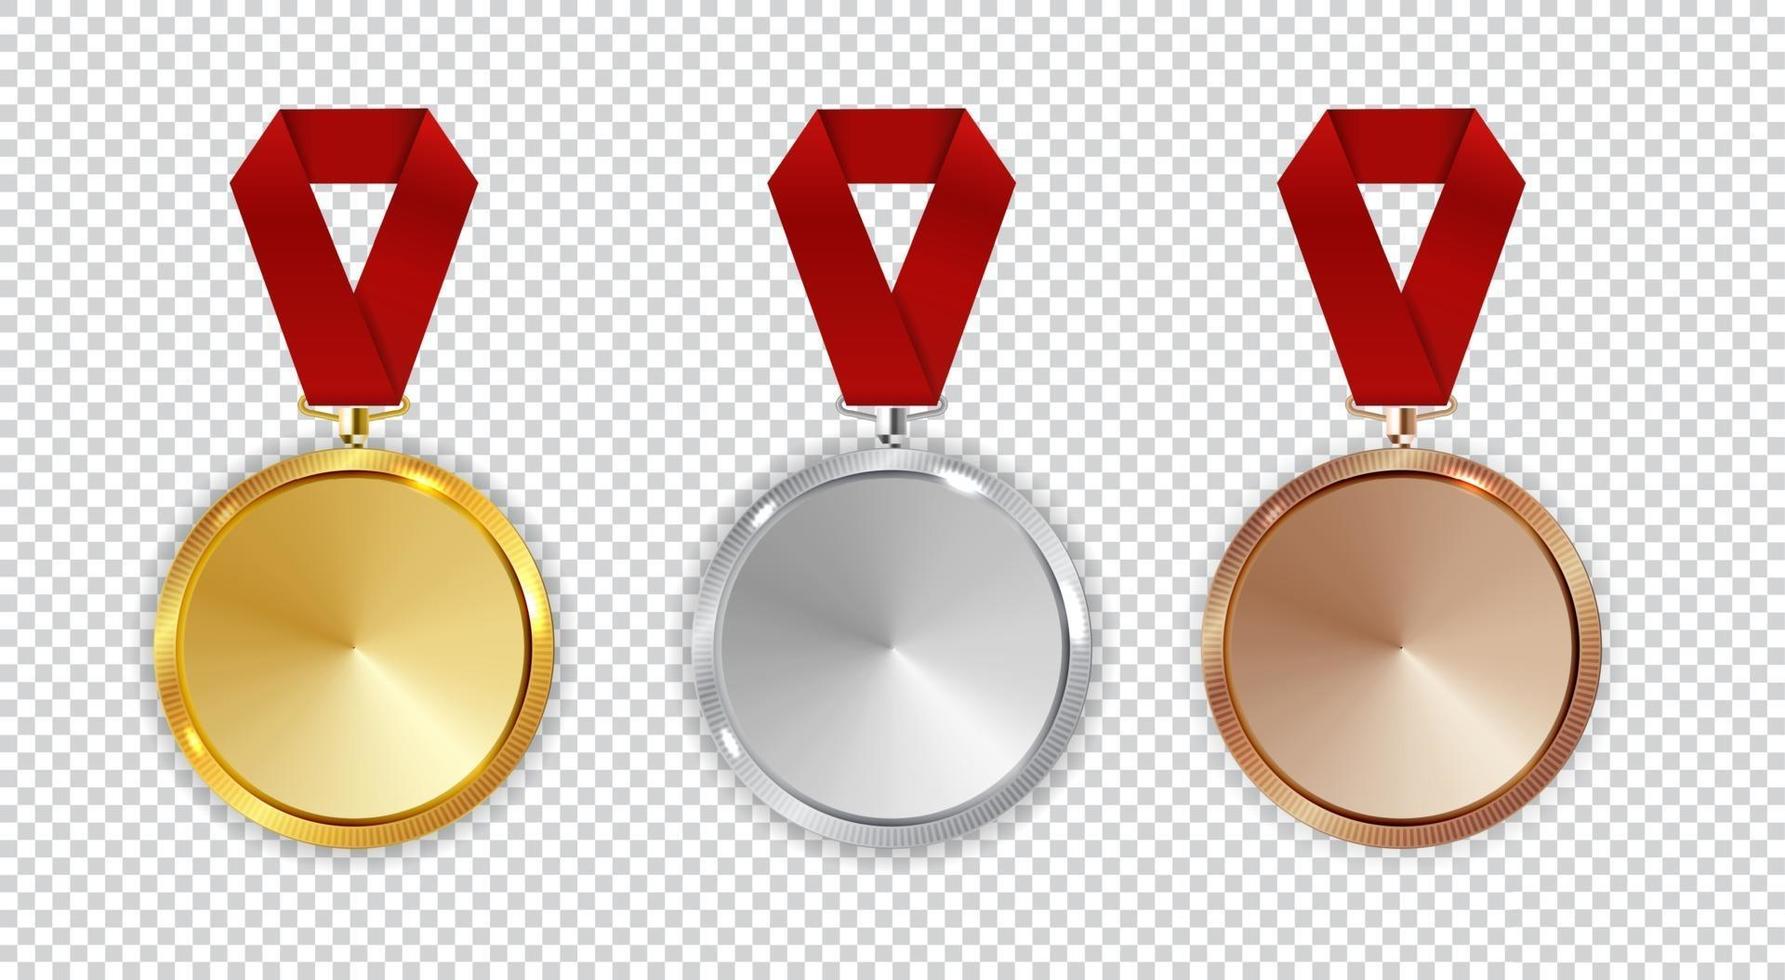 l'icône de la médaille d'or, d'argent et de bronze du champion signe en premier, vecteur